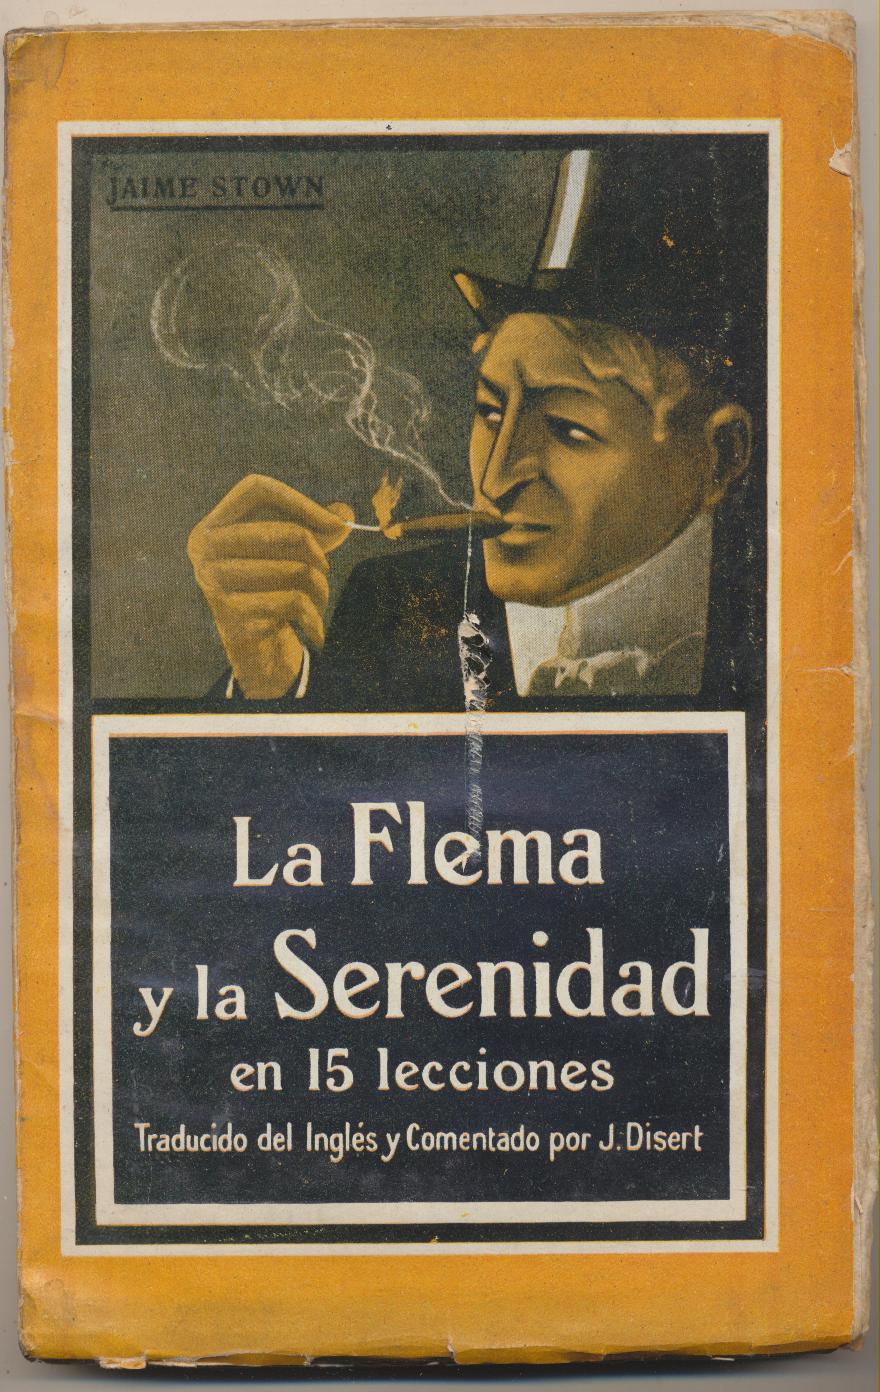 Jaime Stow. La Flema y la Serenidad en 15 lecciones. Ediciones Españolas